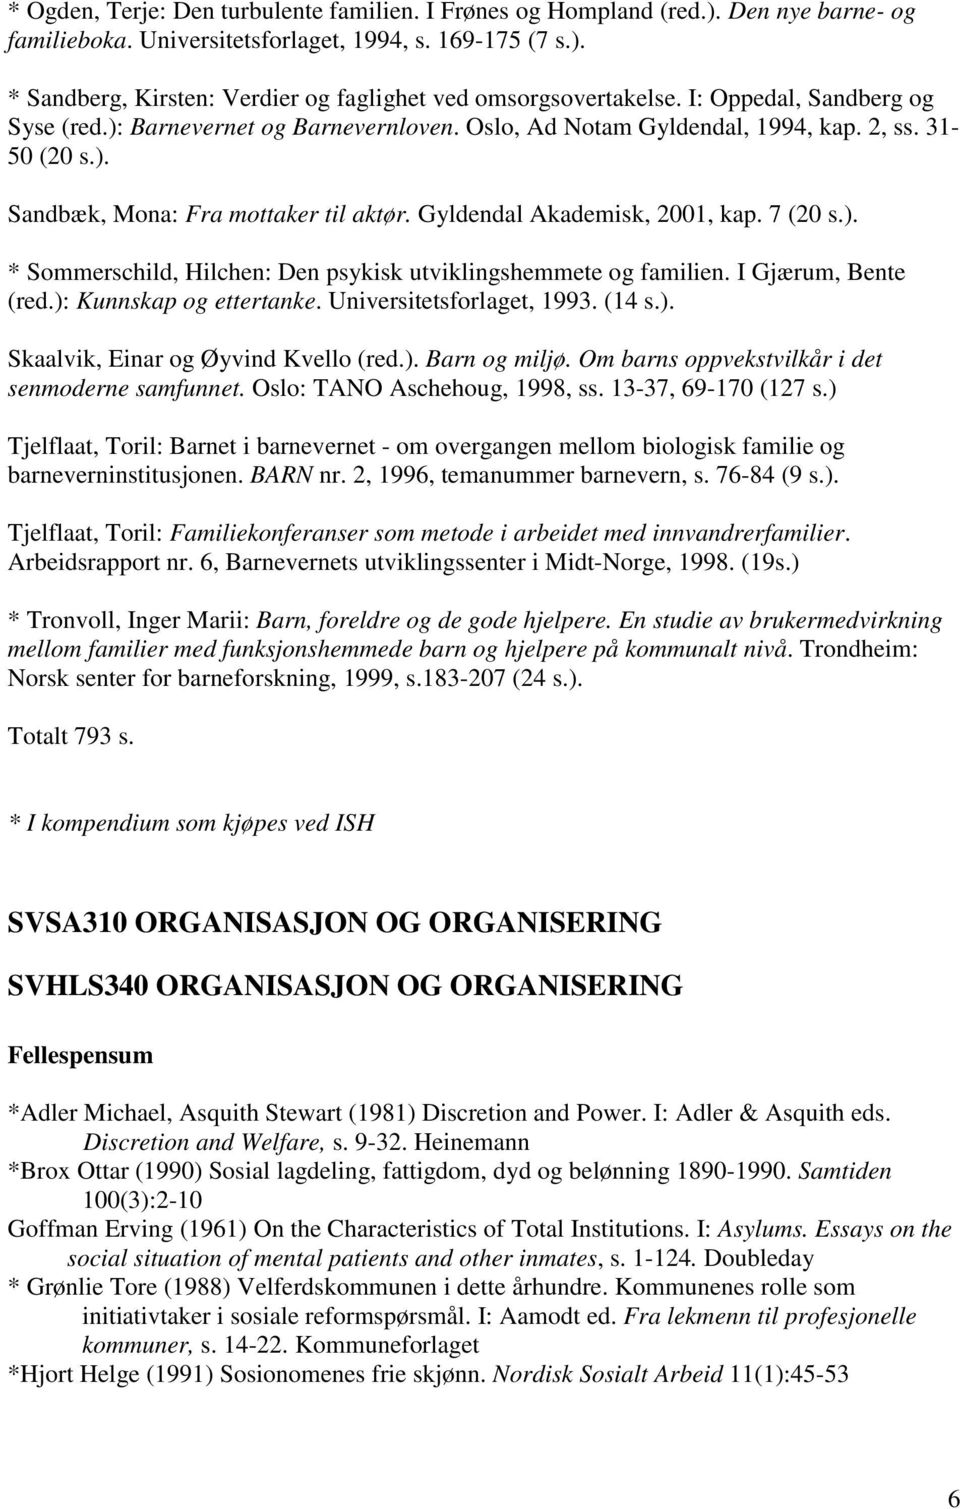 7 (20 s.). * Sommerschild, Hilchen: Den psykisk utviklingshemmete og familien. I Gjærum, Bente (red.): Kunnskap og ettertanke. Universitetsforlaget, 1993. (14 s.). Skaalvik, Einar og Øyvind Kvello (red.